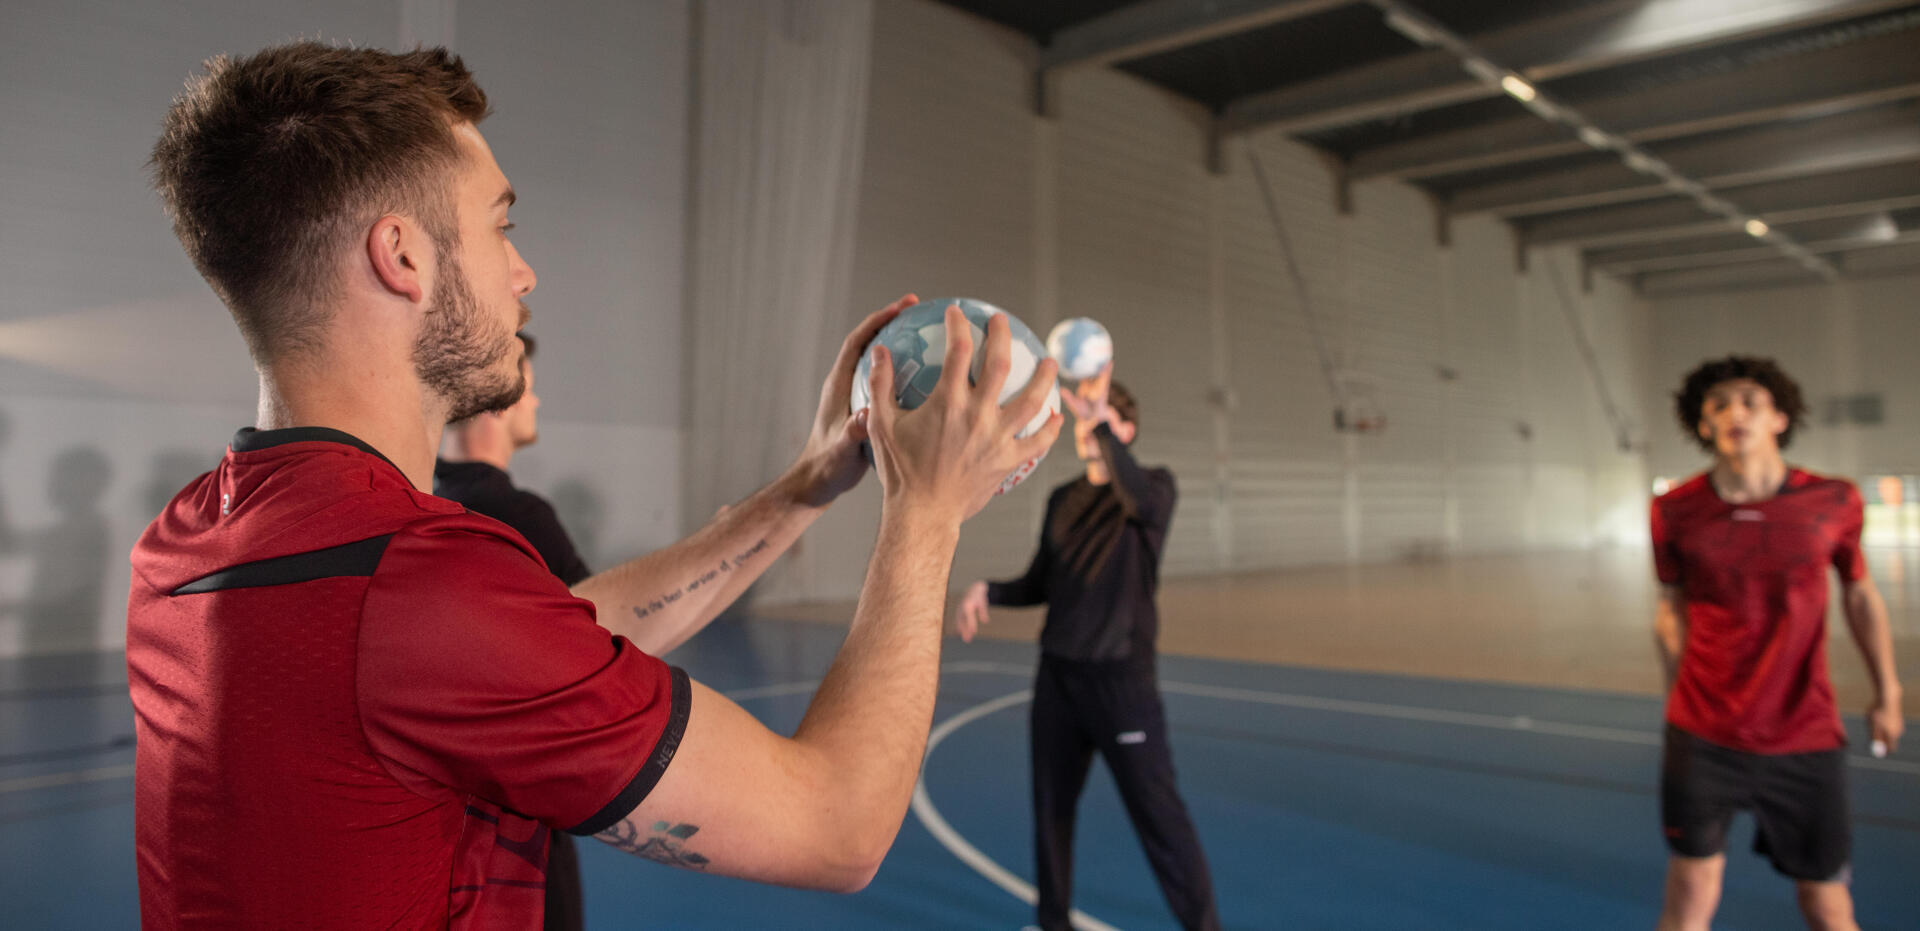 Le HANDFIT : la nouvelle pratique sportive associée au Handball ! 